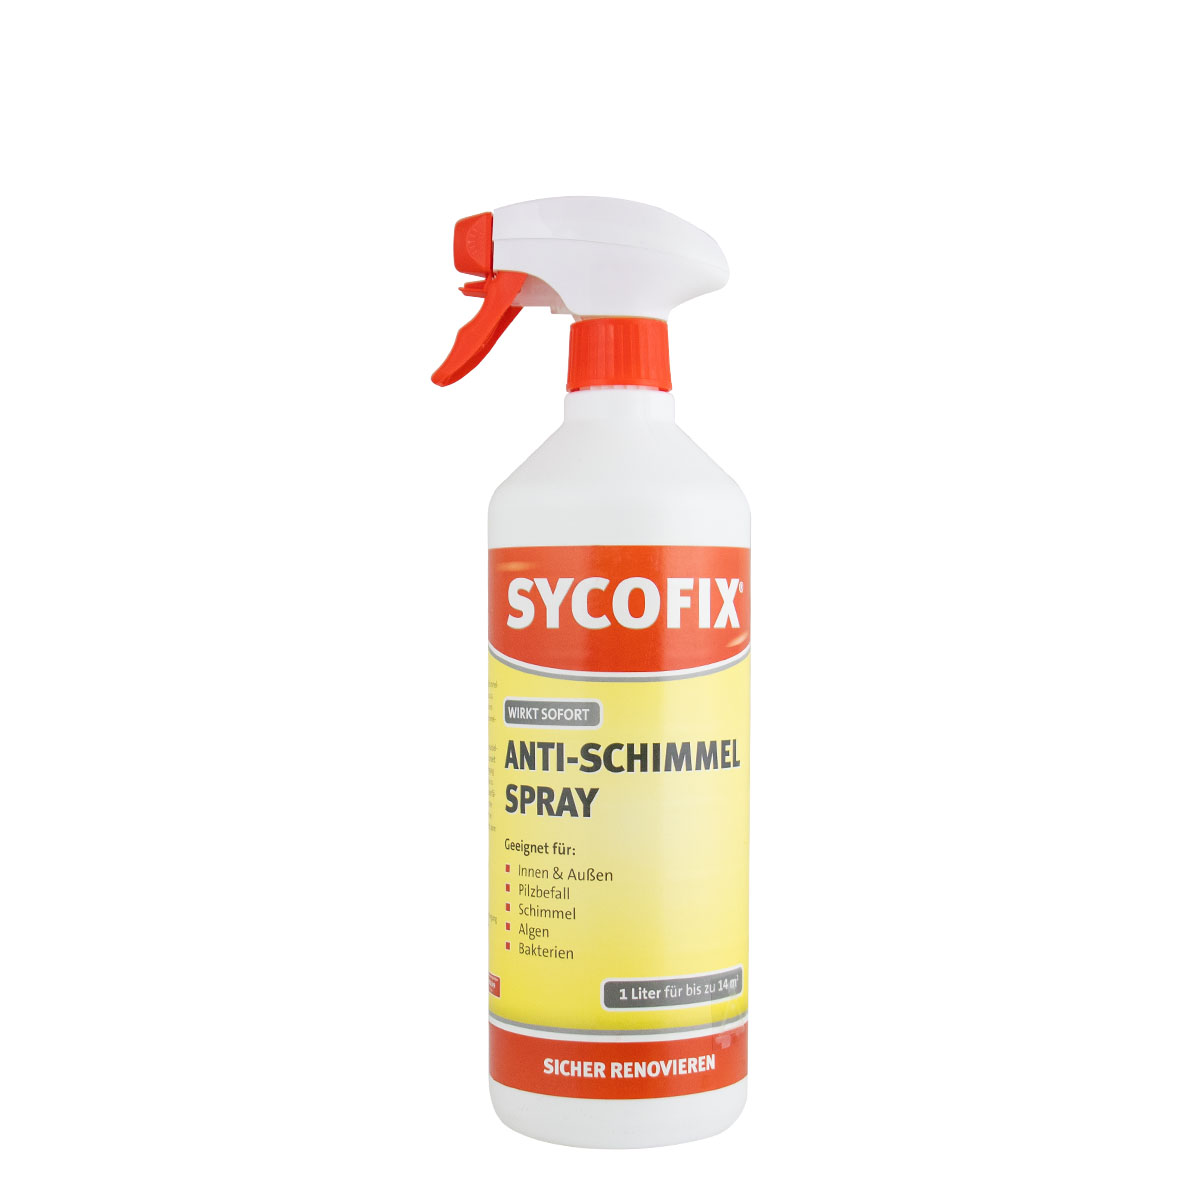 sycofix_anti-schimmel-spray-1l_gross